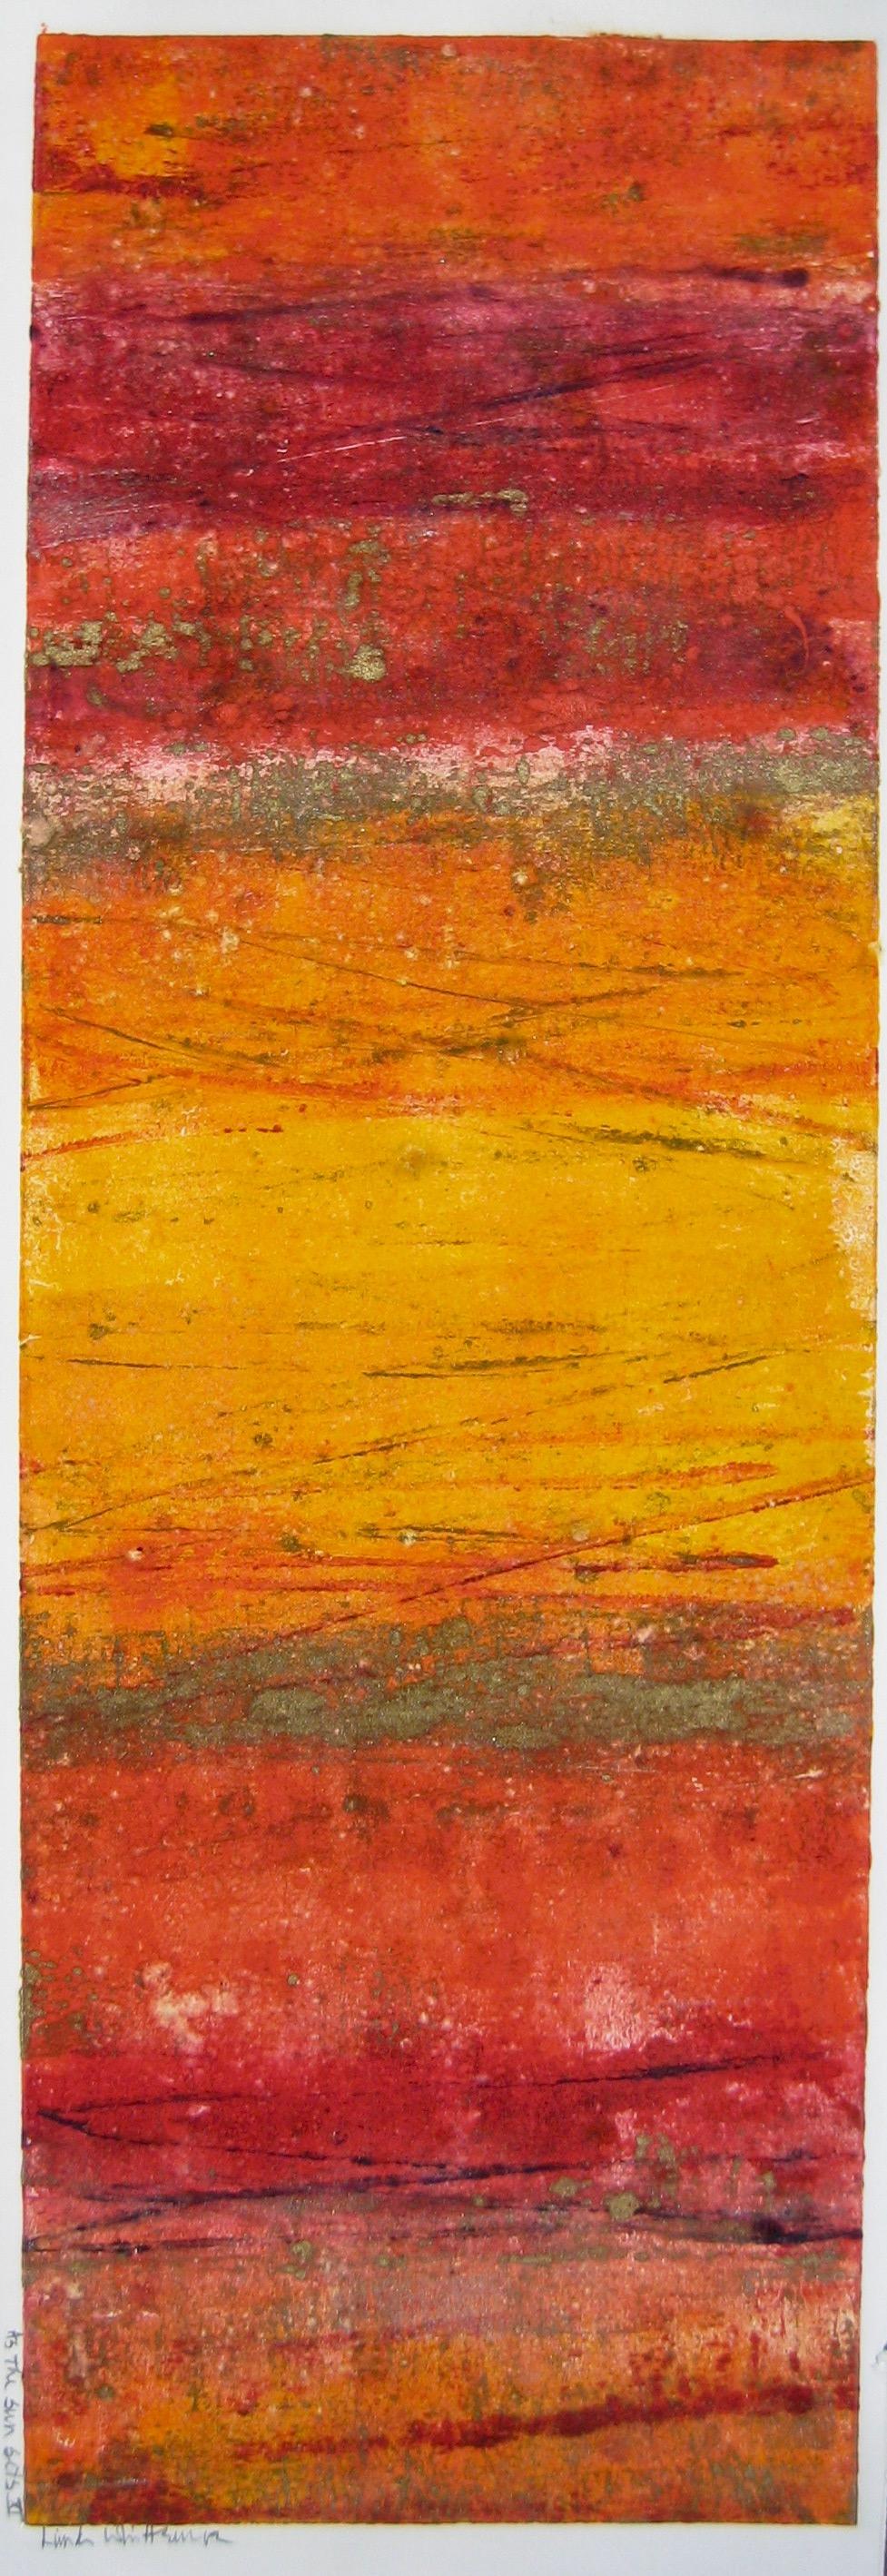 Abstract Print Linda Whittemore - « As The Sun Sets » (Comme le soleil coule)  Techniques mixtes abstraites avec de riches rouges et ors de l'artiste Maui